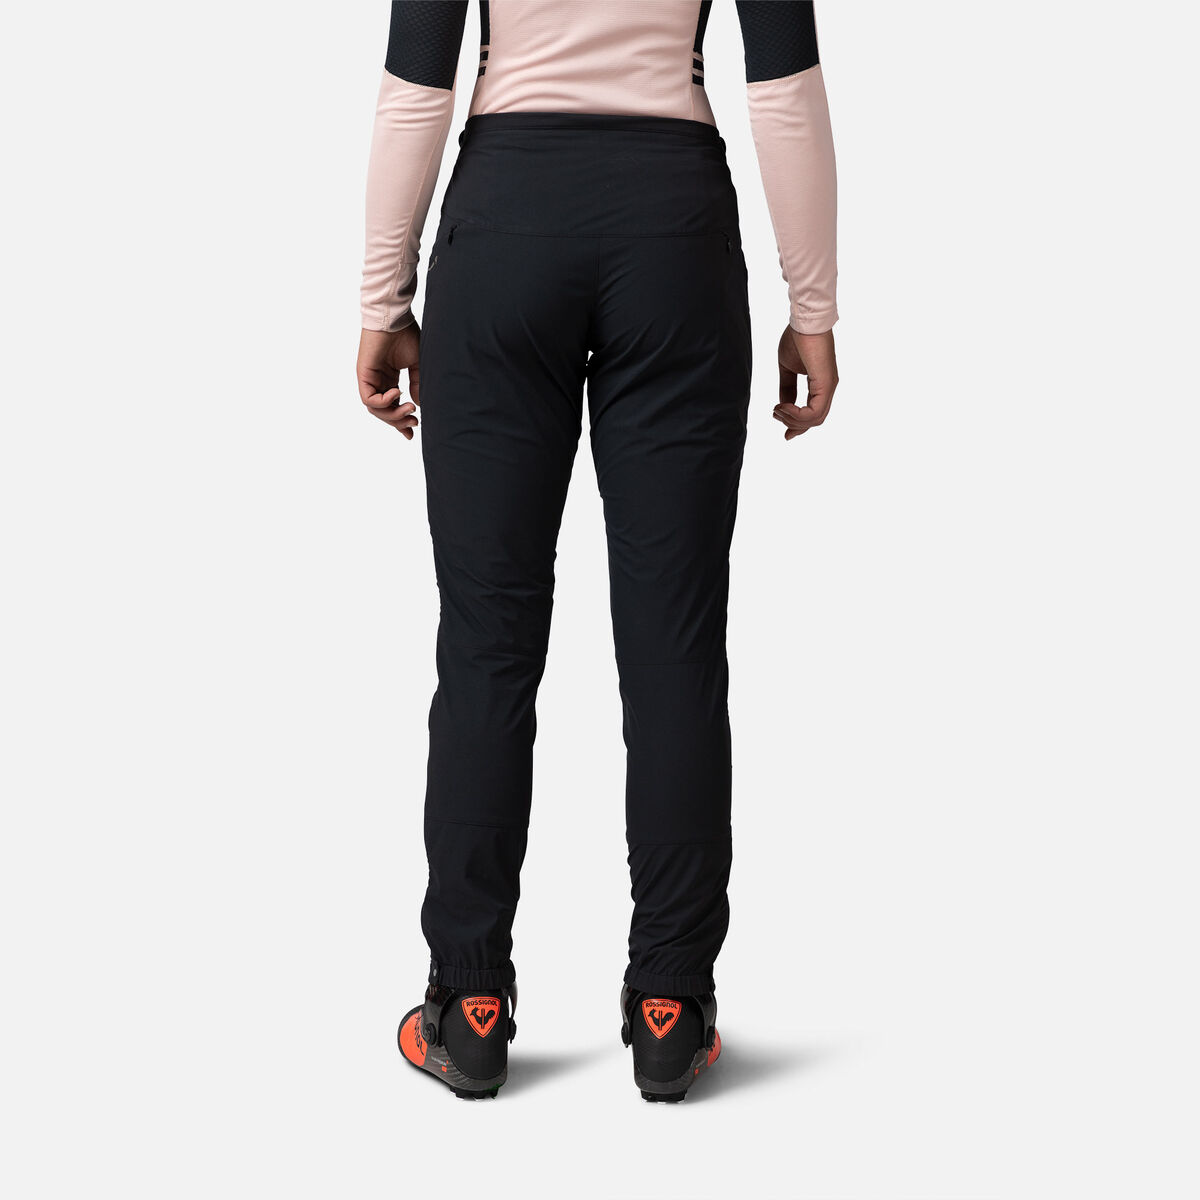 Rossignol Women's Active Versatile XC Ski Pants Black